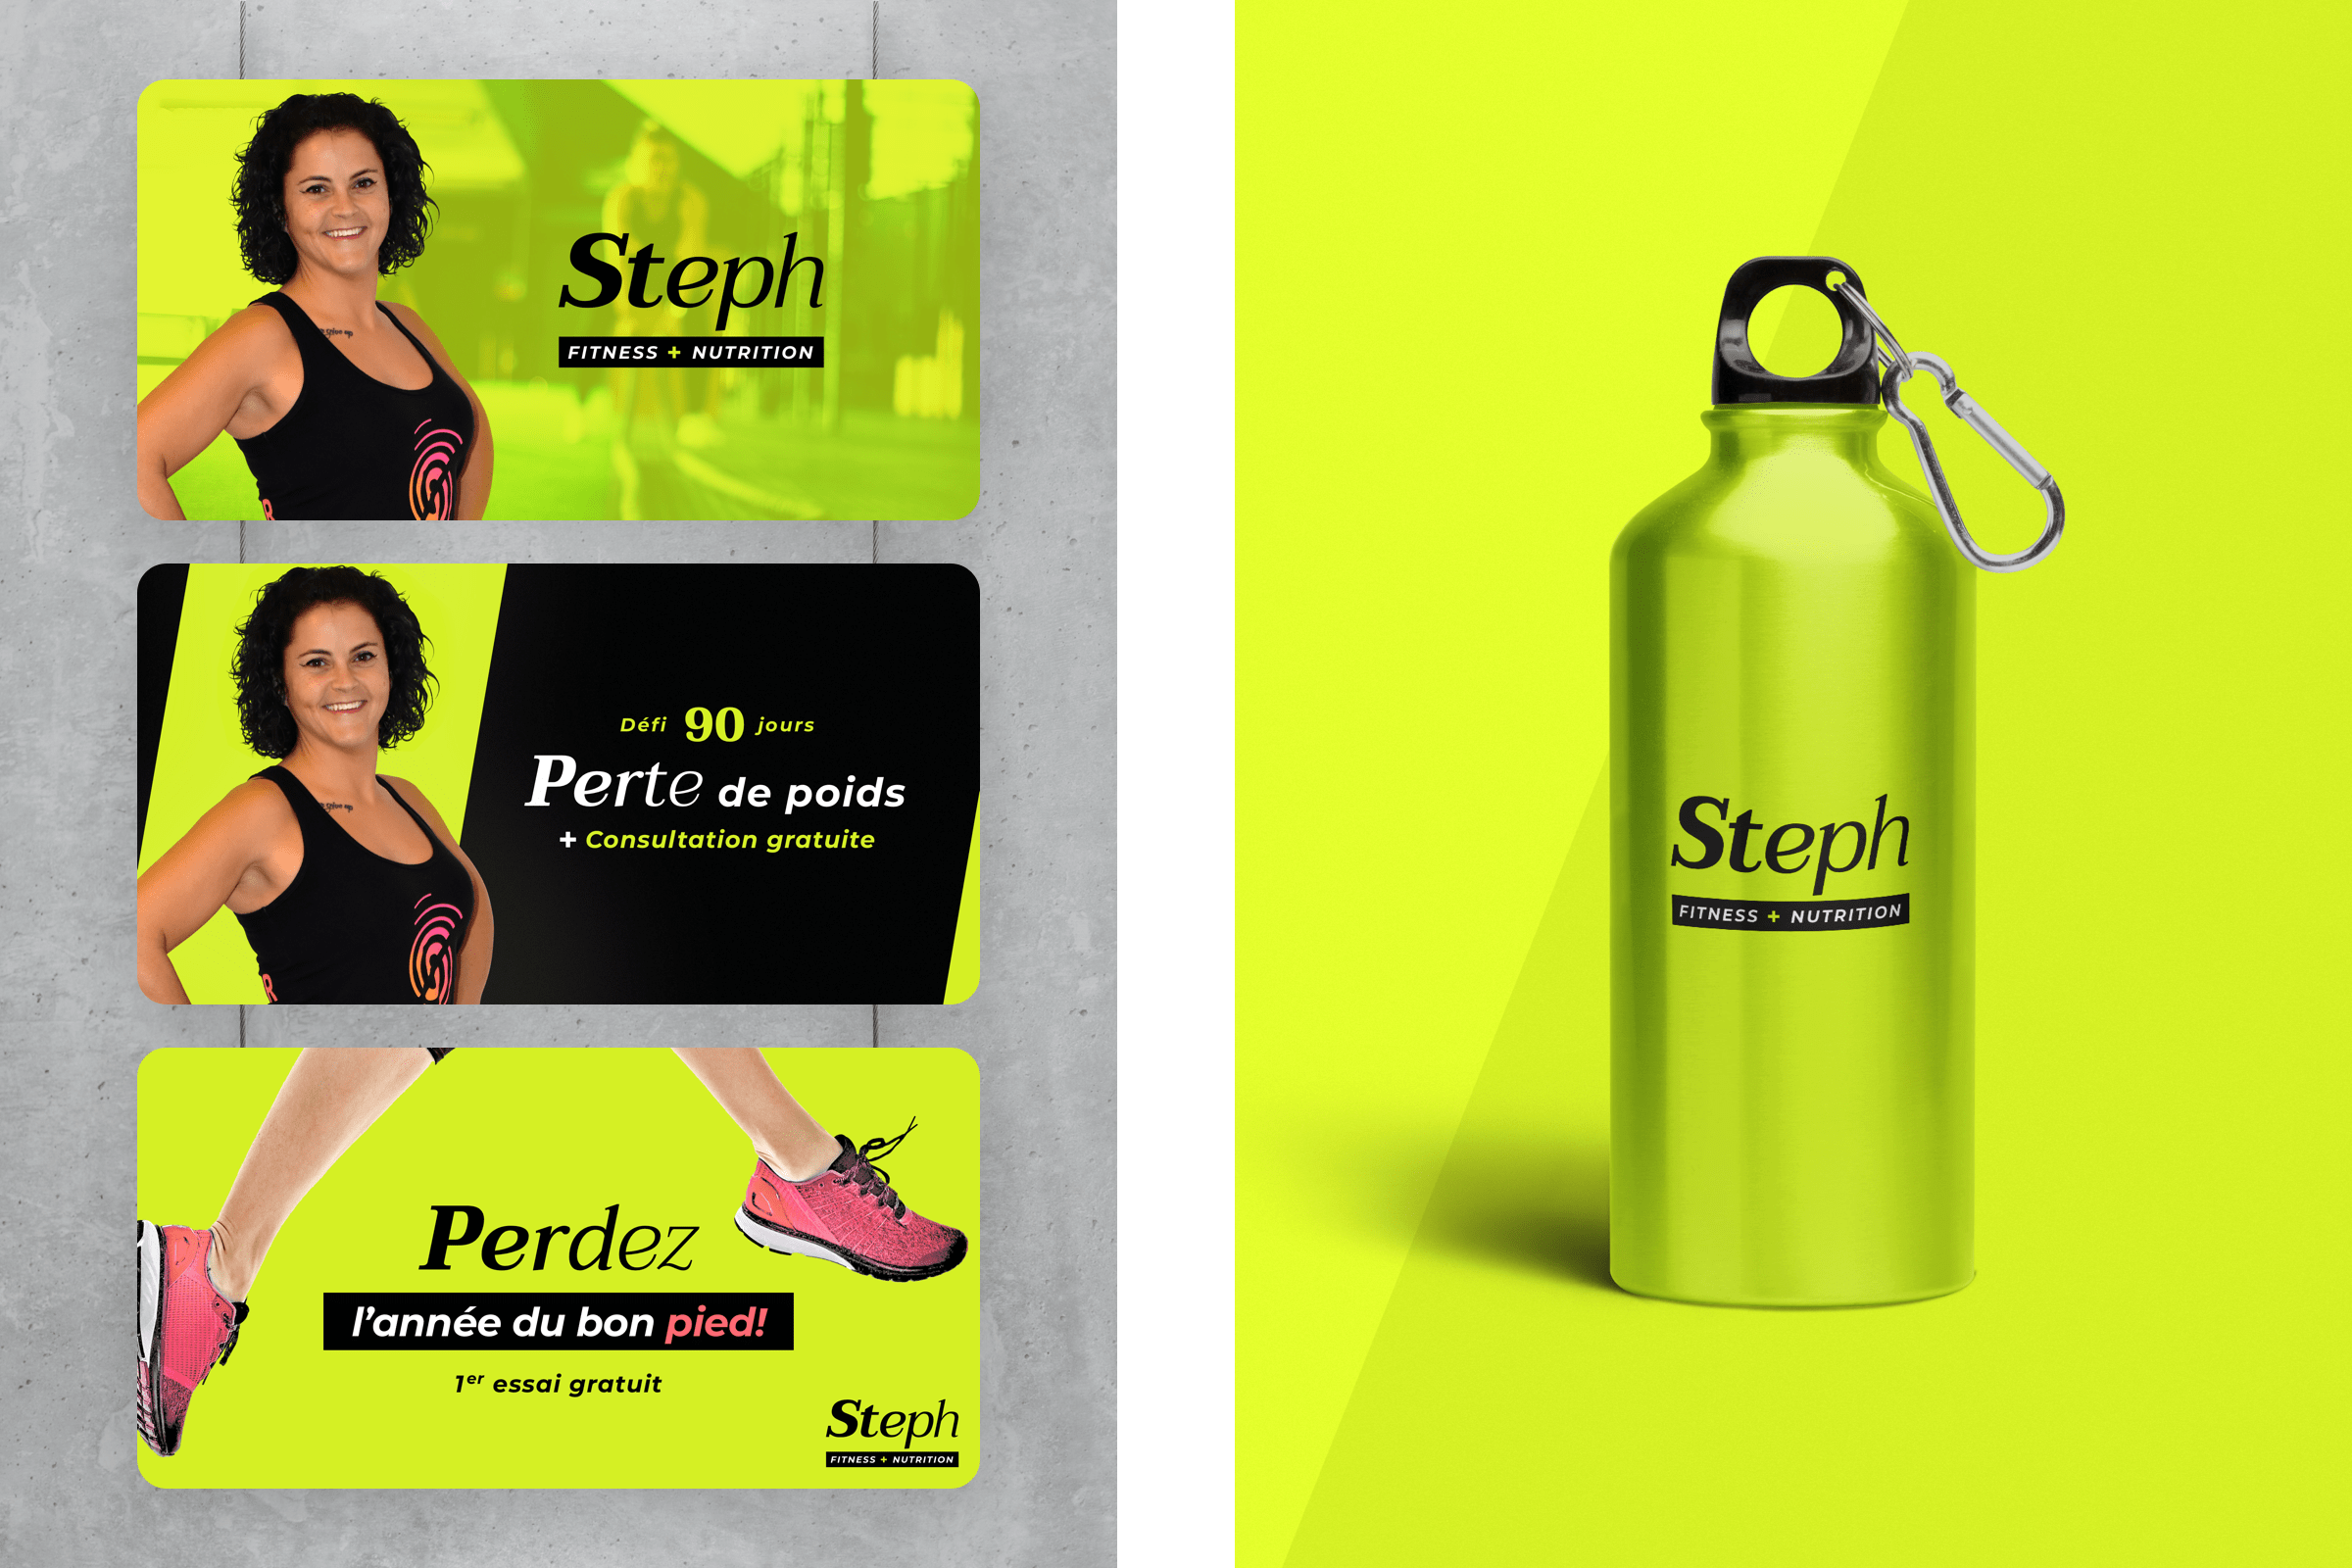 Objet promotionnel bouteille d'eau promotionnelle Steph Fitness+Nutrition | Slash Studio Numérique